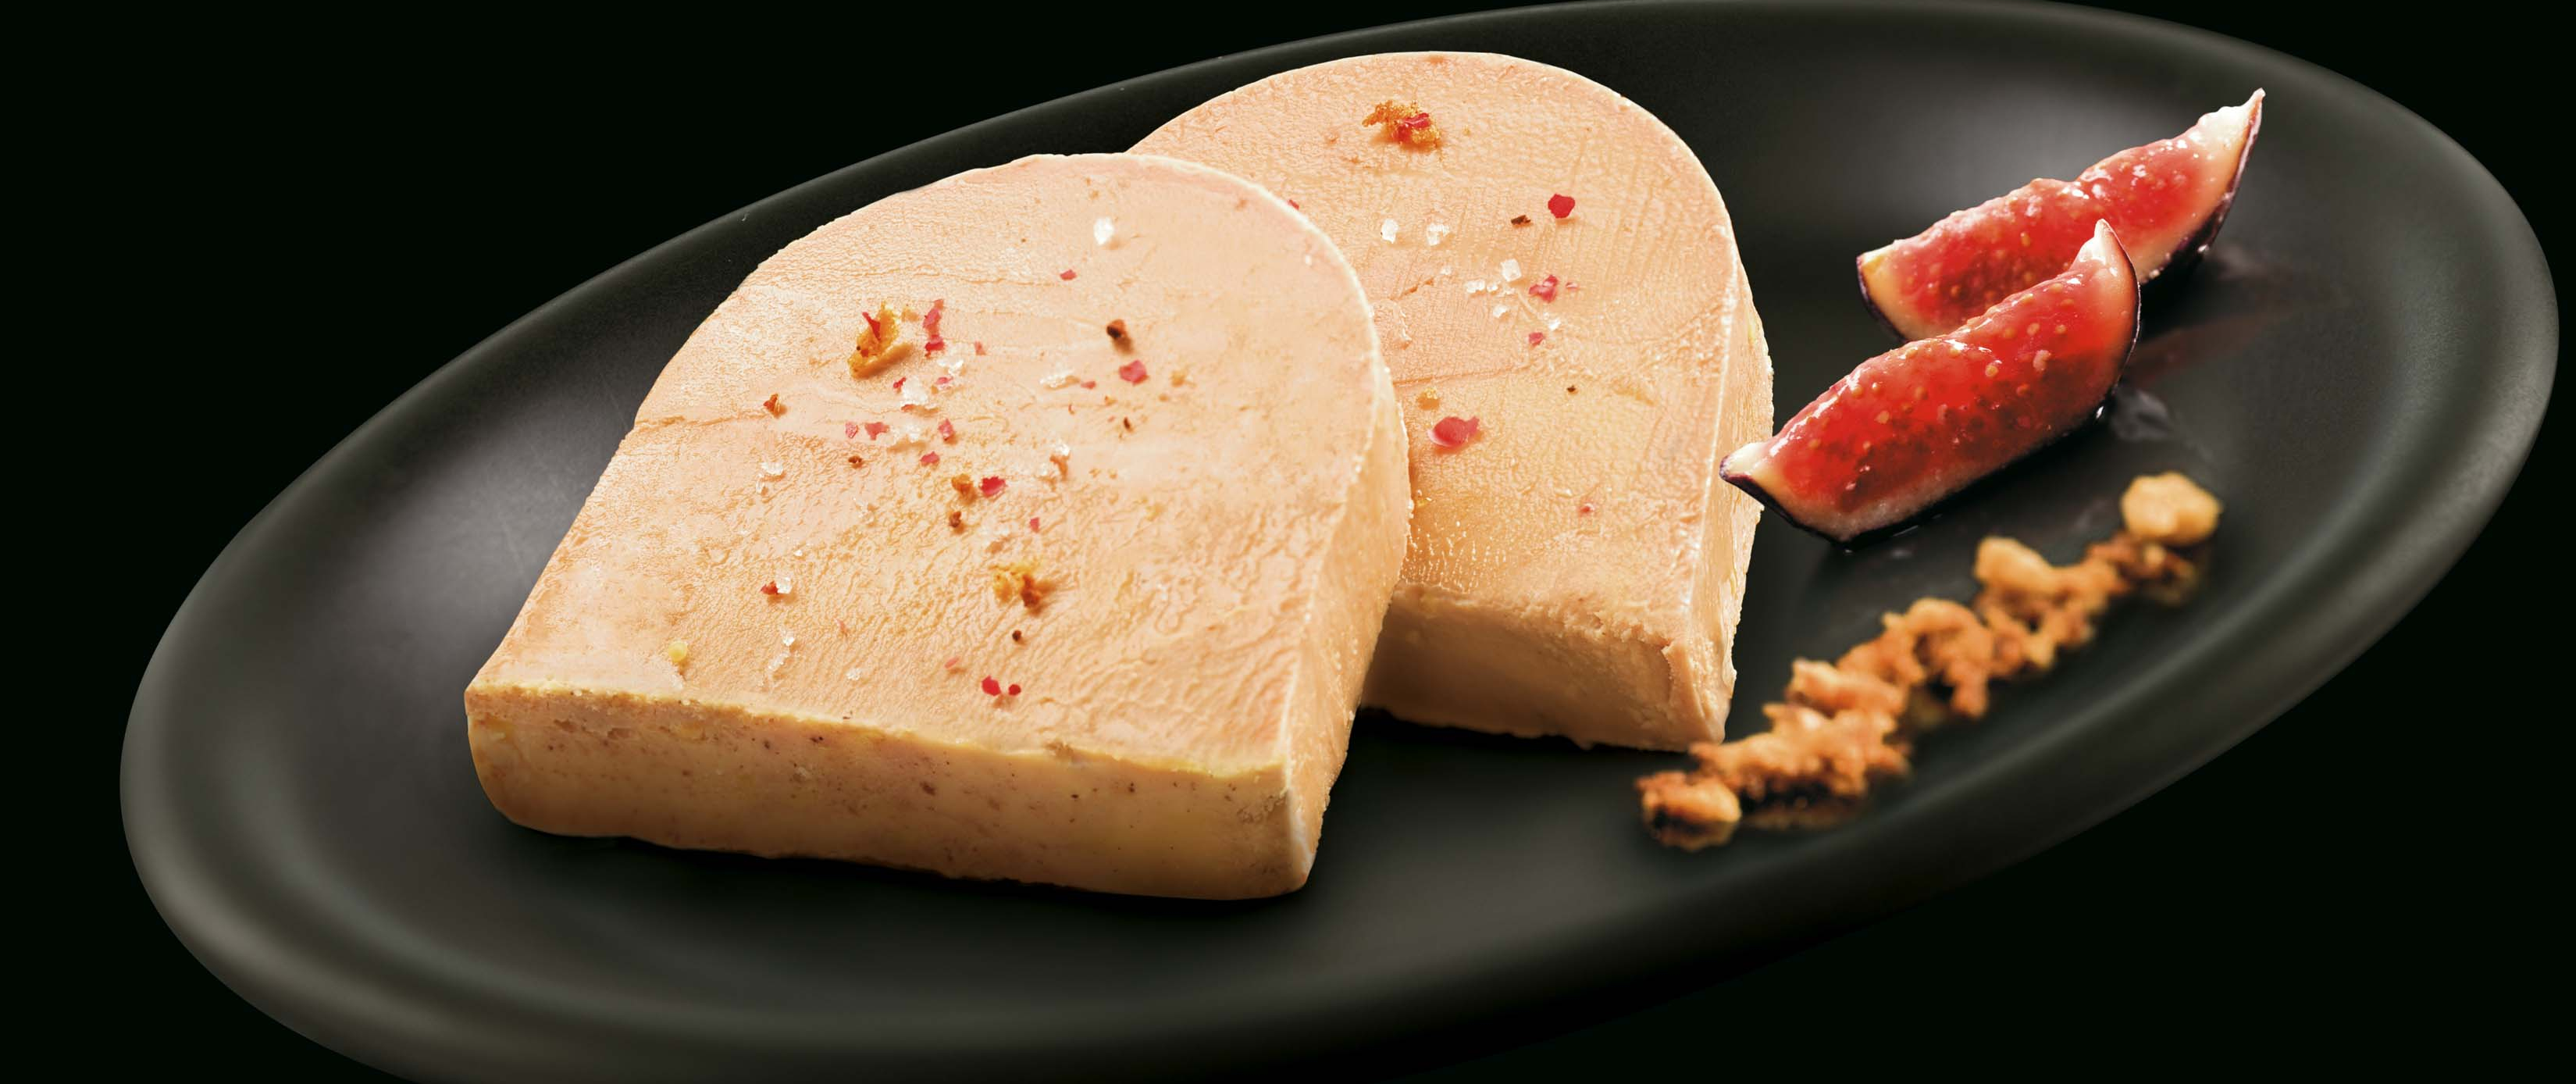 ¿Cómo afectará el brote de influenza aviar al mercado nacional de foie gras?